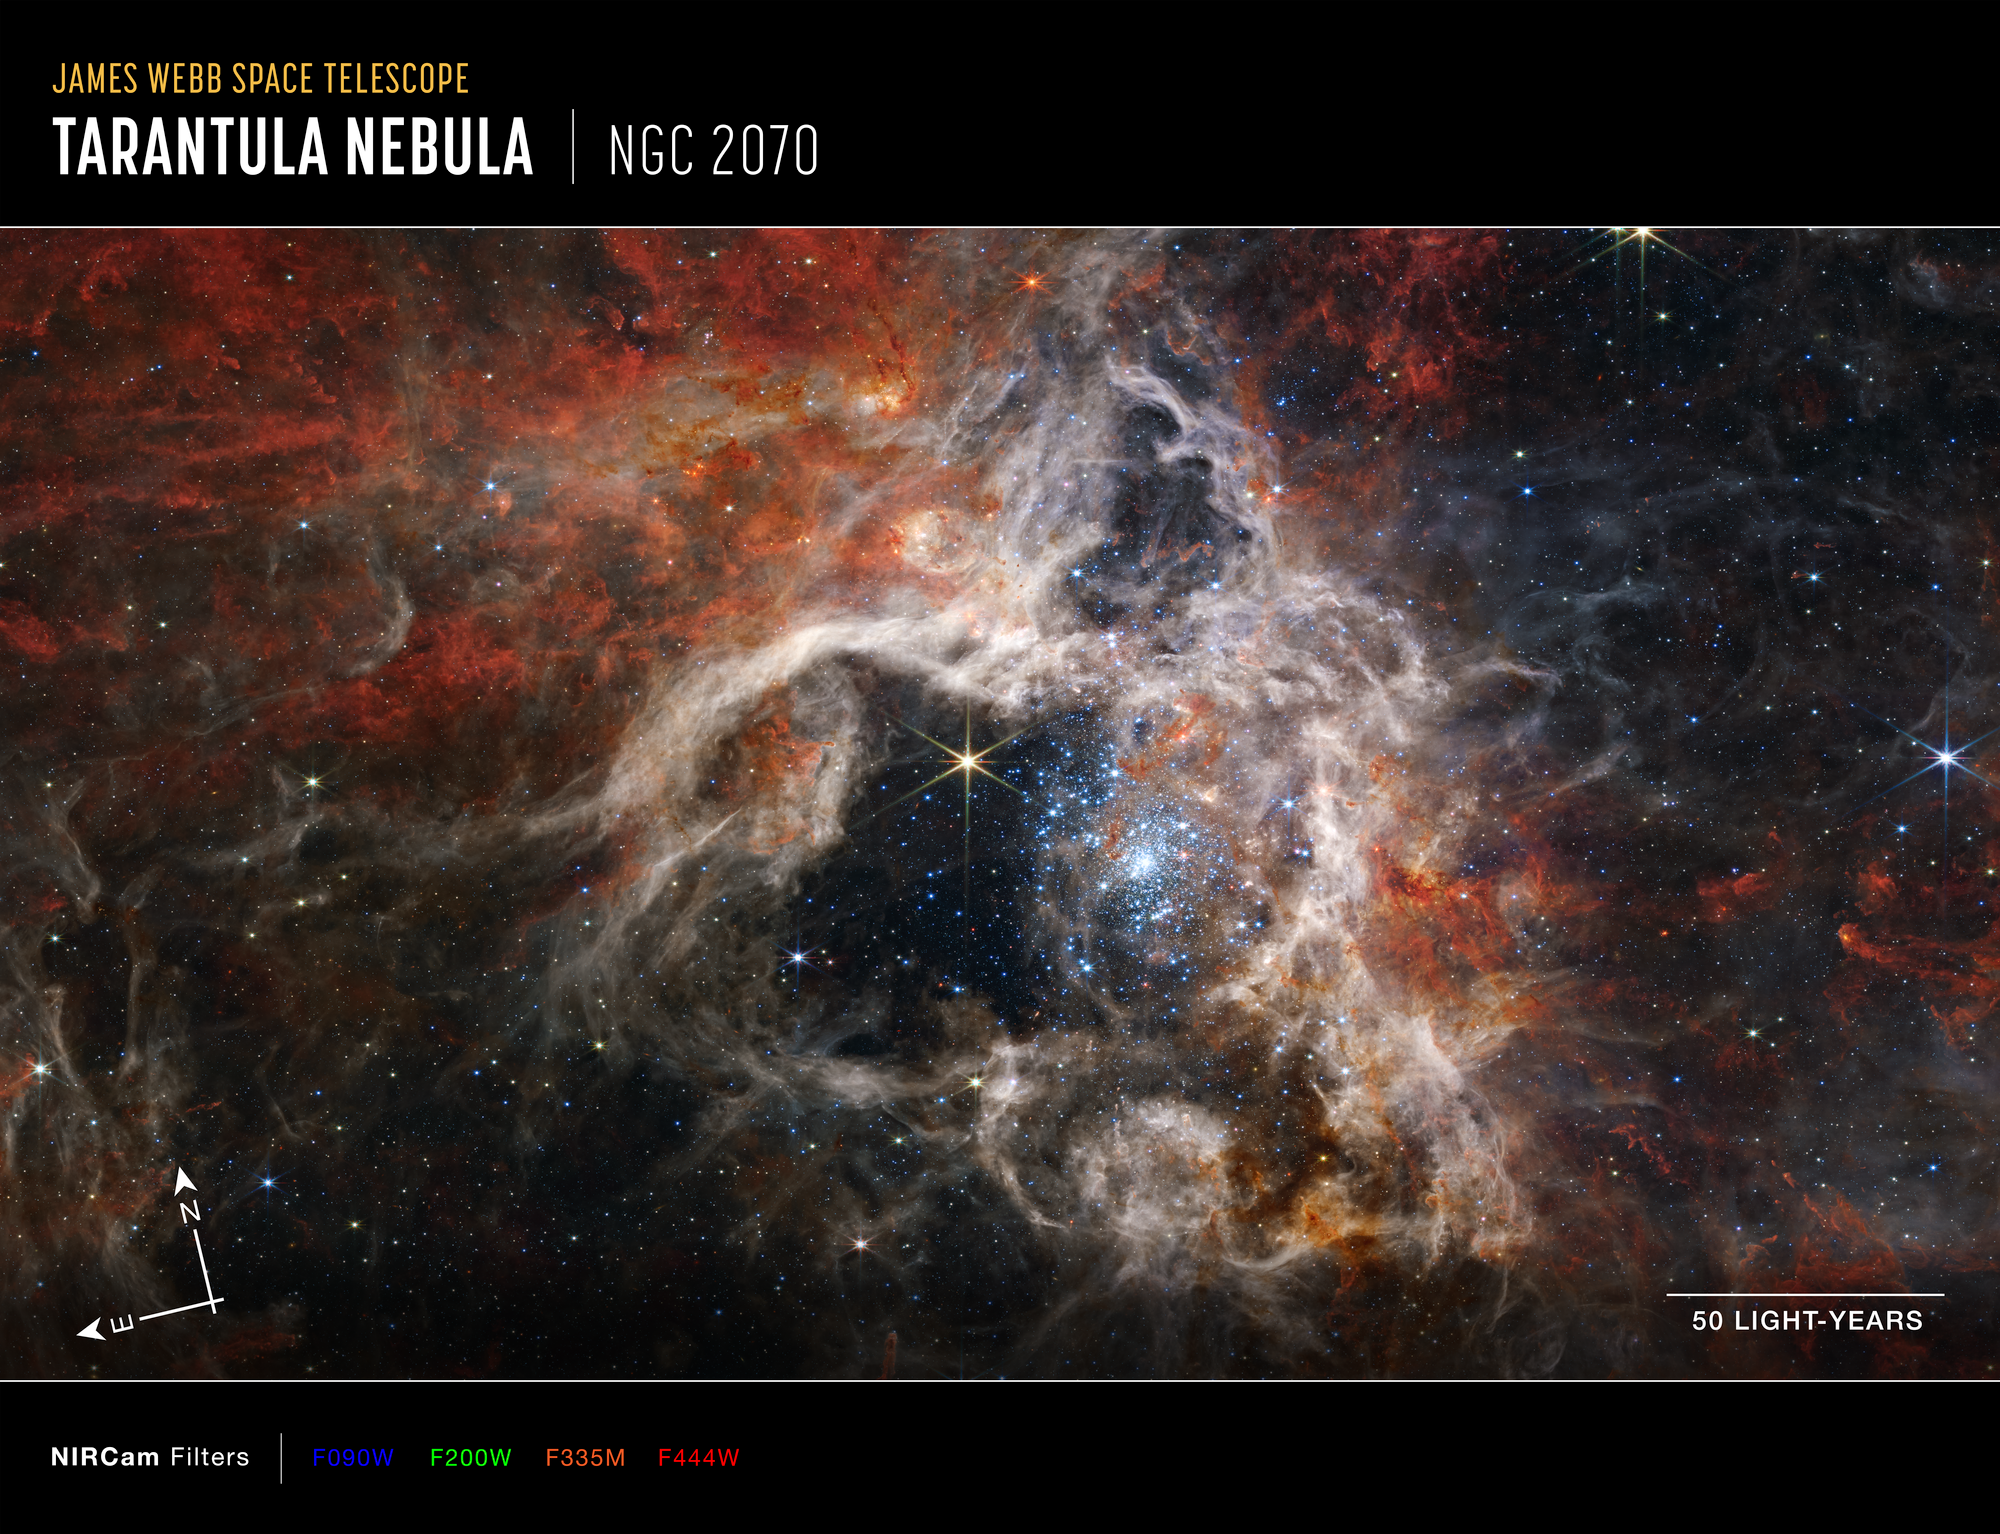 Mozaika zdjęć Mgławicy Tarantula w bliskiej podczerwieni, które zarejestrowała kamera NIRCam współpracująca z Kosmicznym Teleskopem Jamesa Webba. Tutaj kolory zostały zmapowane następująco: niebieski – filtr F090W, zielony – F200W, pomarańczowy – F335W, czerwony – F444W, a dole po prawej stronie pokazano odcinek odpowiadający 50 l.św. Z niespotykaną do tej pory rozdzielczością widać obszar powstawania młodych gwiazd, z których dziesiątki tysięcy jeszcze nie odkryto, bo były schowane w obłokach pyłu międzygwiazdowego. Najbardziej aktywny obszar to gromada młodych gwiazd masywnych, które skrzą się na niebiesko w centrum zdjęcia. Dalej od centralnego obszaru Mgławicy Tarantula gaz przyjmuje kolor rdzawy, który tutaj oznacza, że mgławica jest bogata w związki węglowodorowe. Ten gęsty gaz jest materiałem, z którego w przyszłości powstaną gwiazdy. Źródło: NASA, ESA, CSA, STScI, Webb ERO Production Team